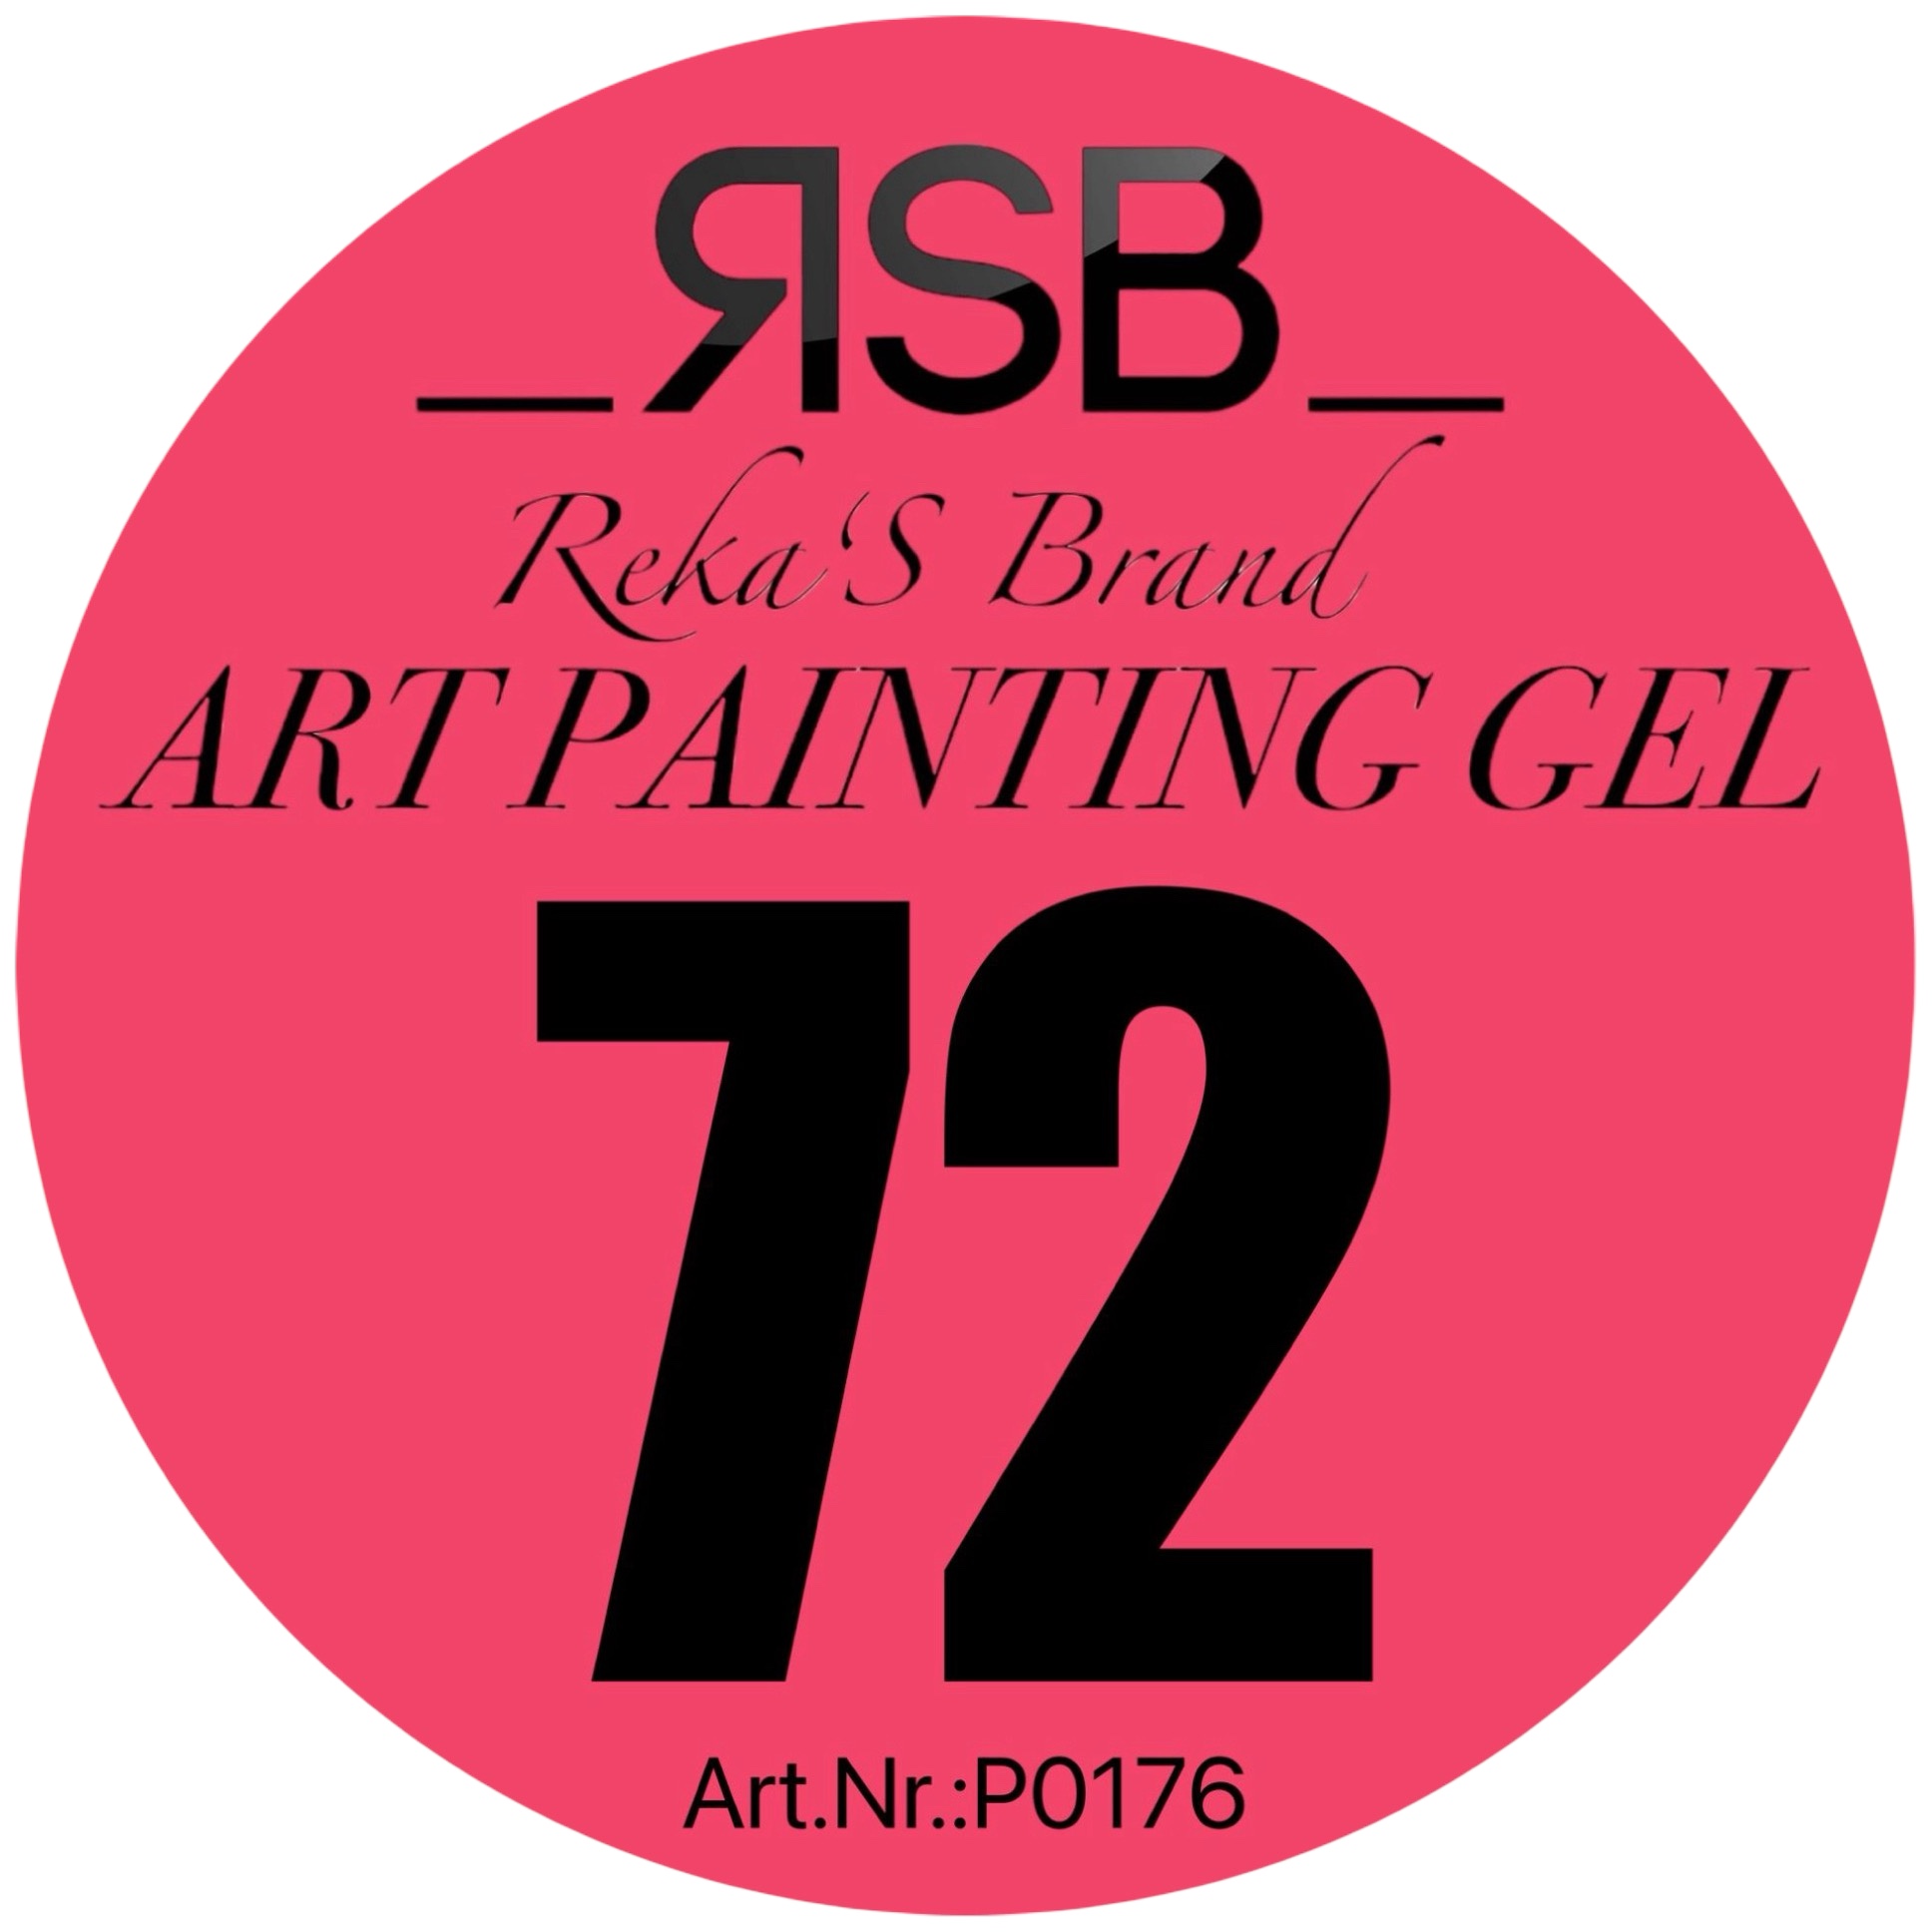 ART PAINTING GEL 72